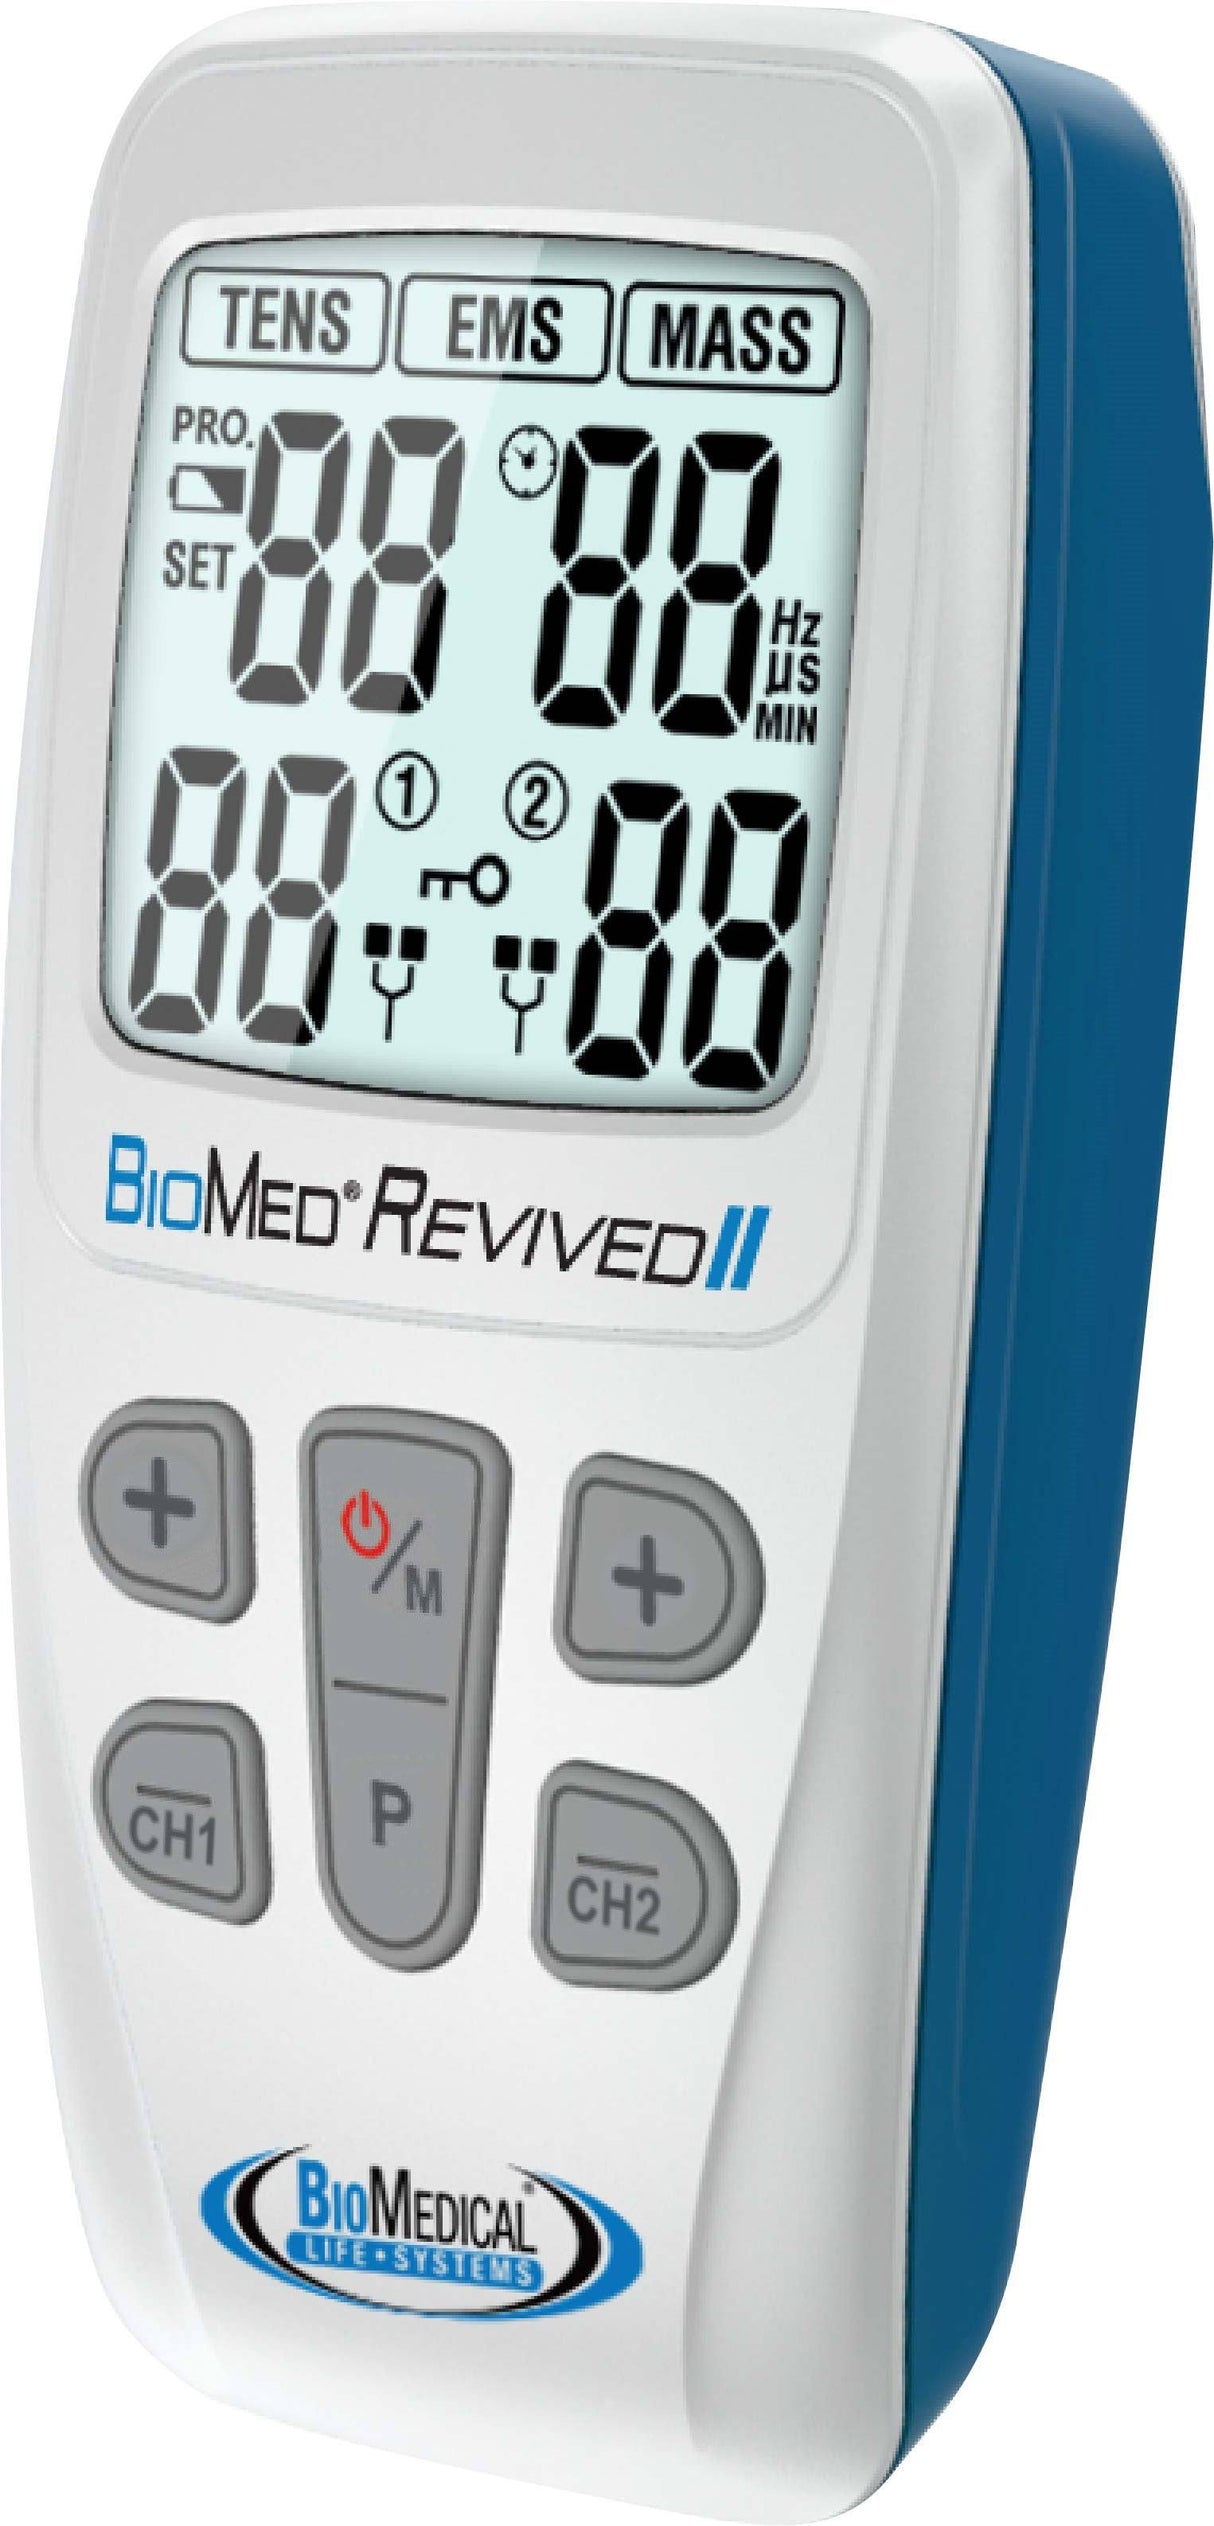 BIOMED® Revived II TENS/EMS/Massage